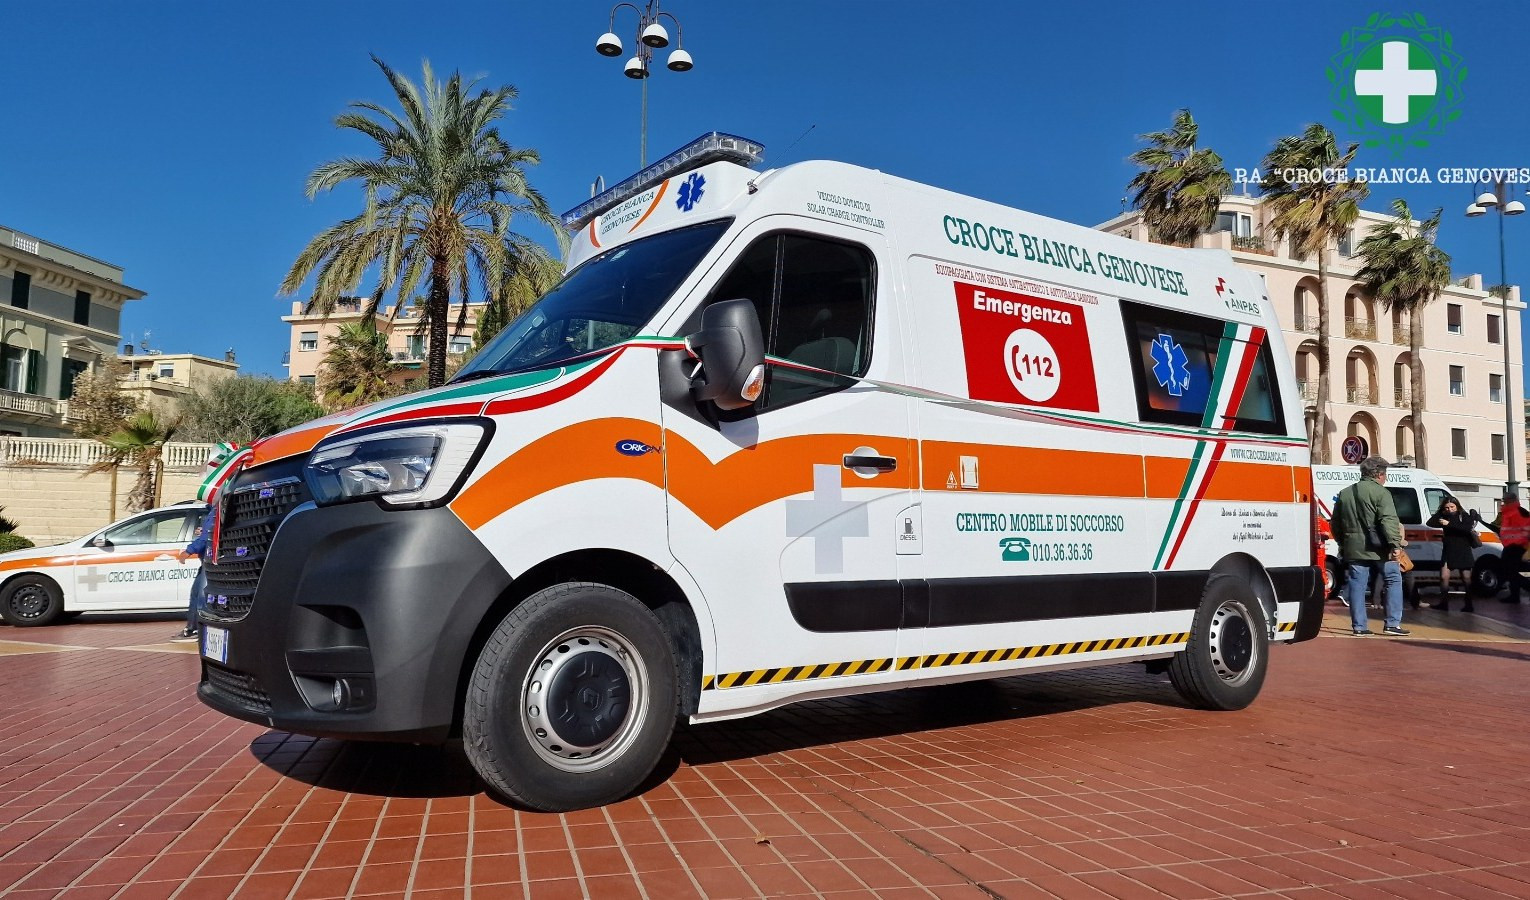 Croce Bianca Genovese, inaugurata nuova ambulanza di ultima generazione